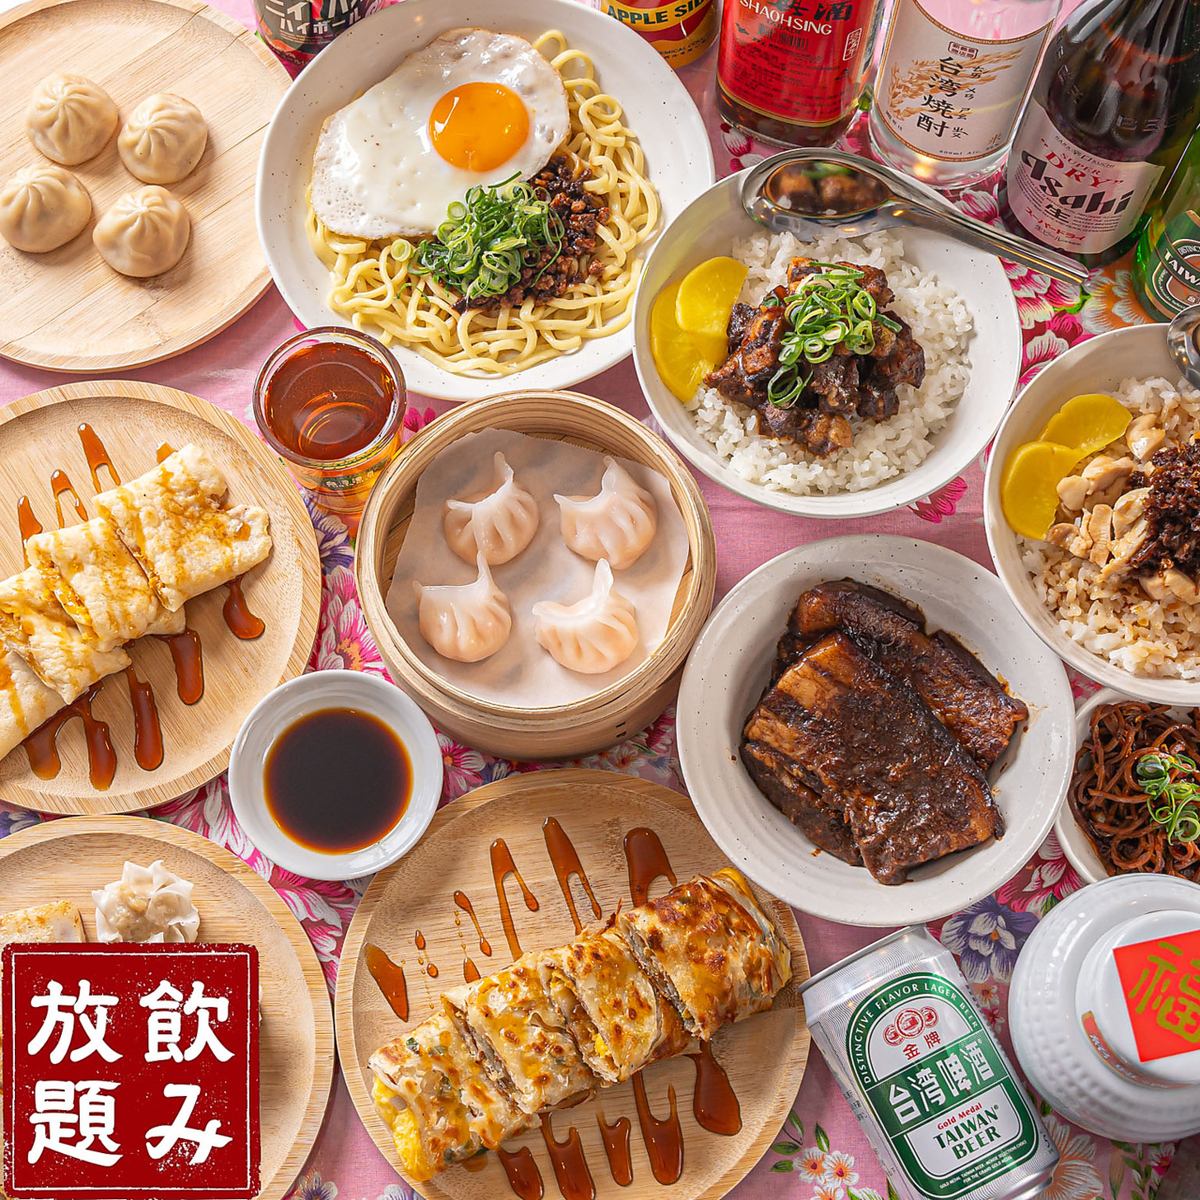 您可以在距離板宿僅幾步之遙的商店享用主要的台灣美食。